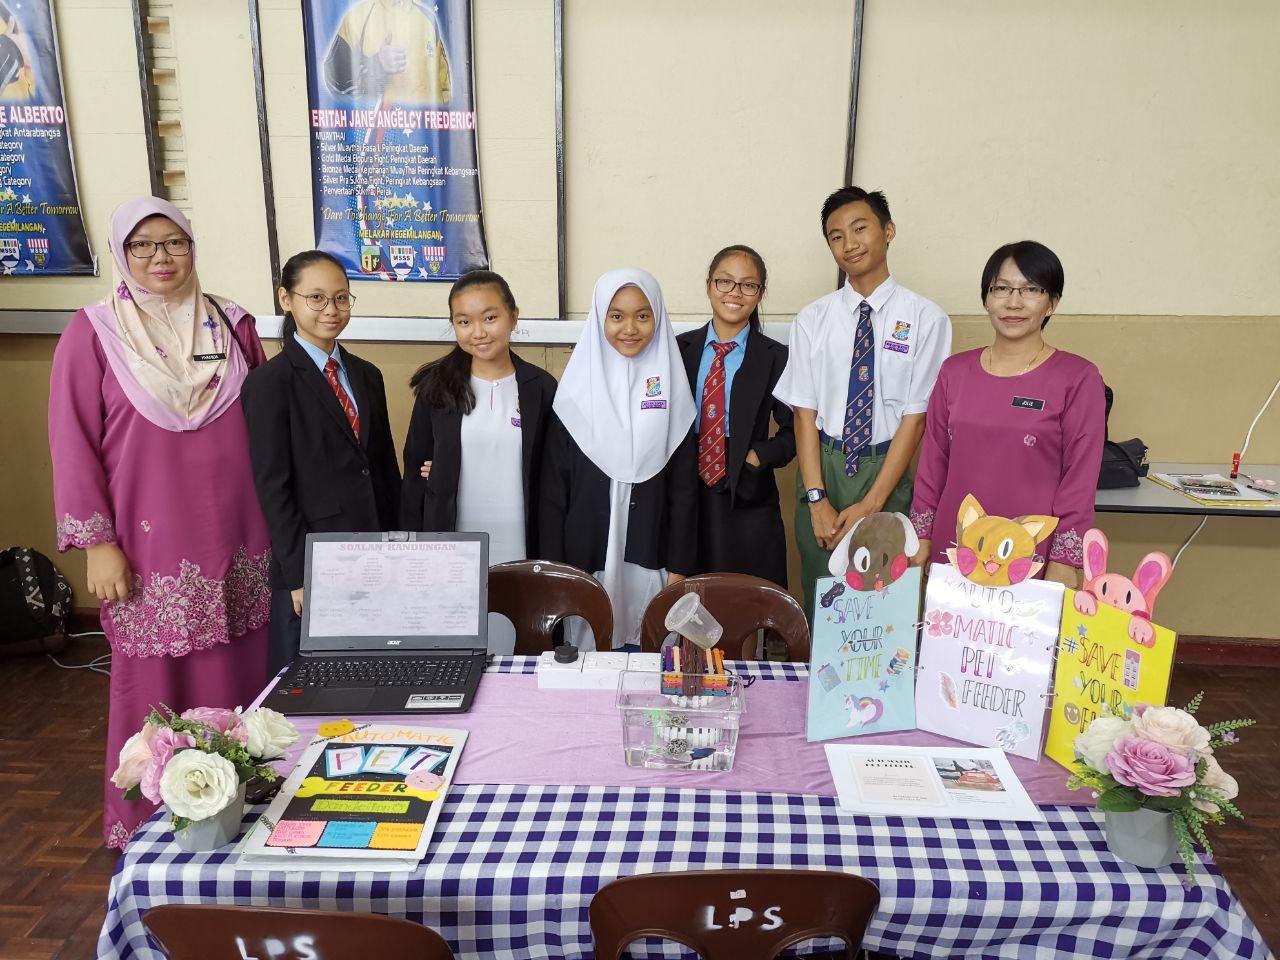 Pingat Emas dan Pingat Gangsa Berjaya Menjadi Milik Pasukan SMK Bandaraya Kota Kinabalu dalam Pertandingan Product Based Learning (PBL) peringkat Daerah Kota Kinabalu